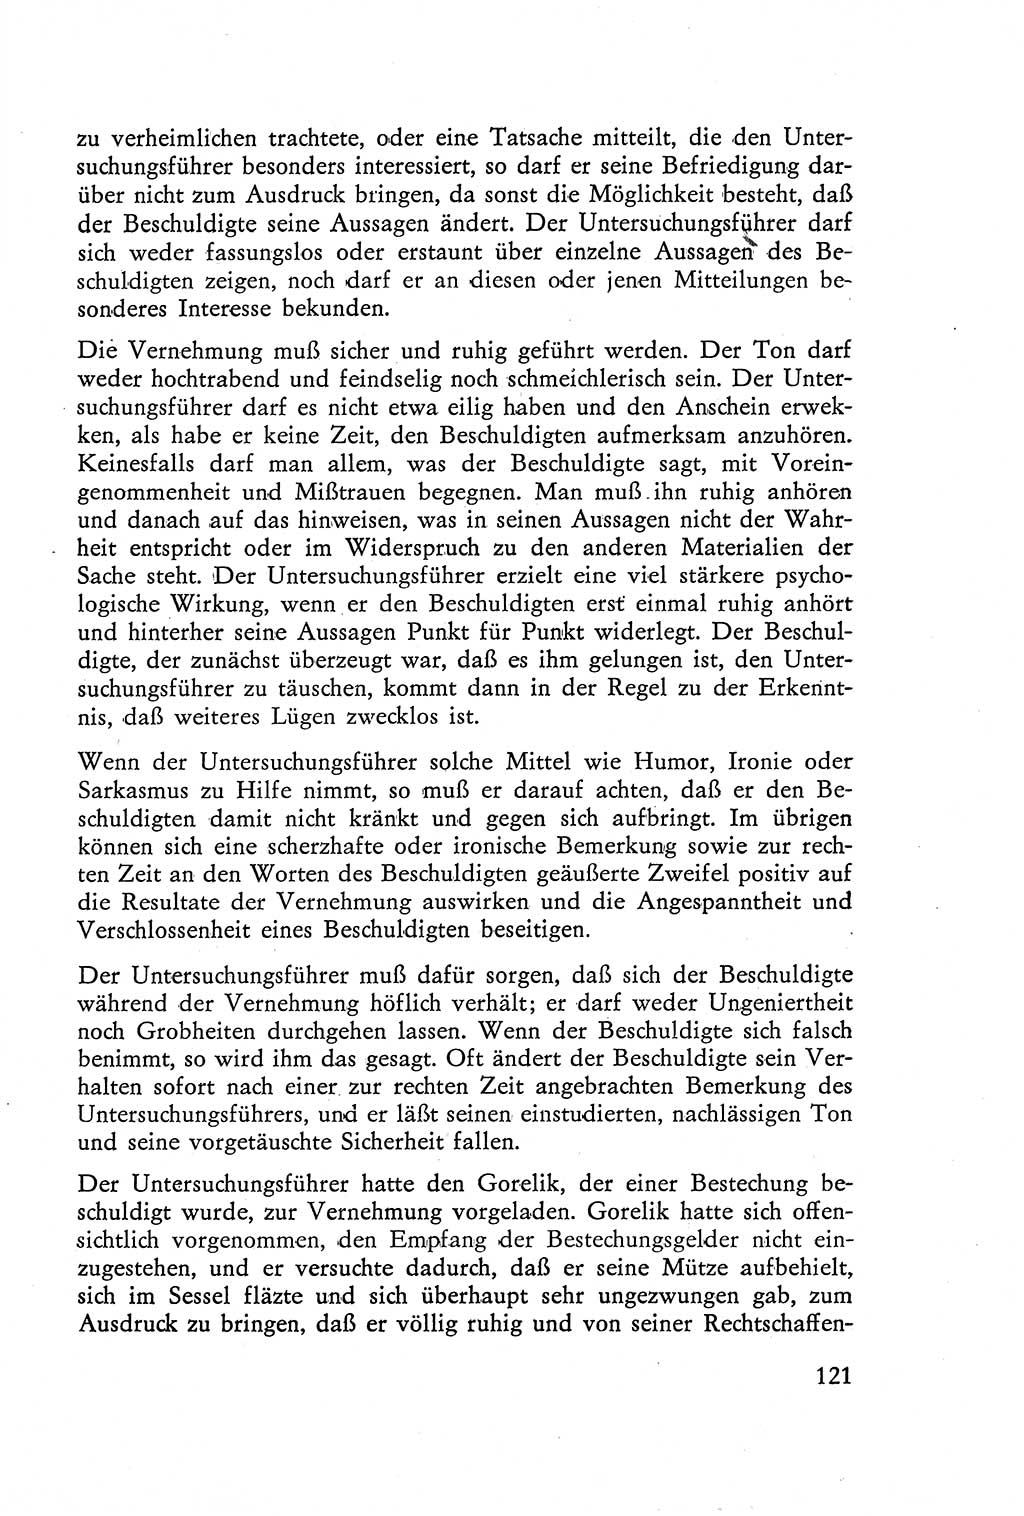 Die Vernehmung [Deutsche Demokratische Republik (DDR)] 1960, Seite 121 (Vern. DDR 1960, S. 121)